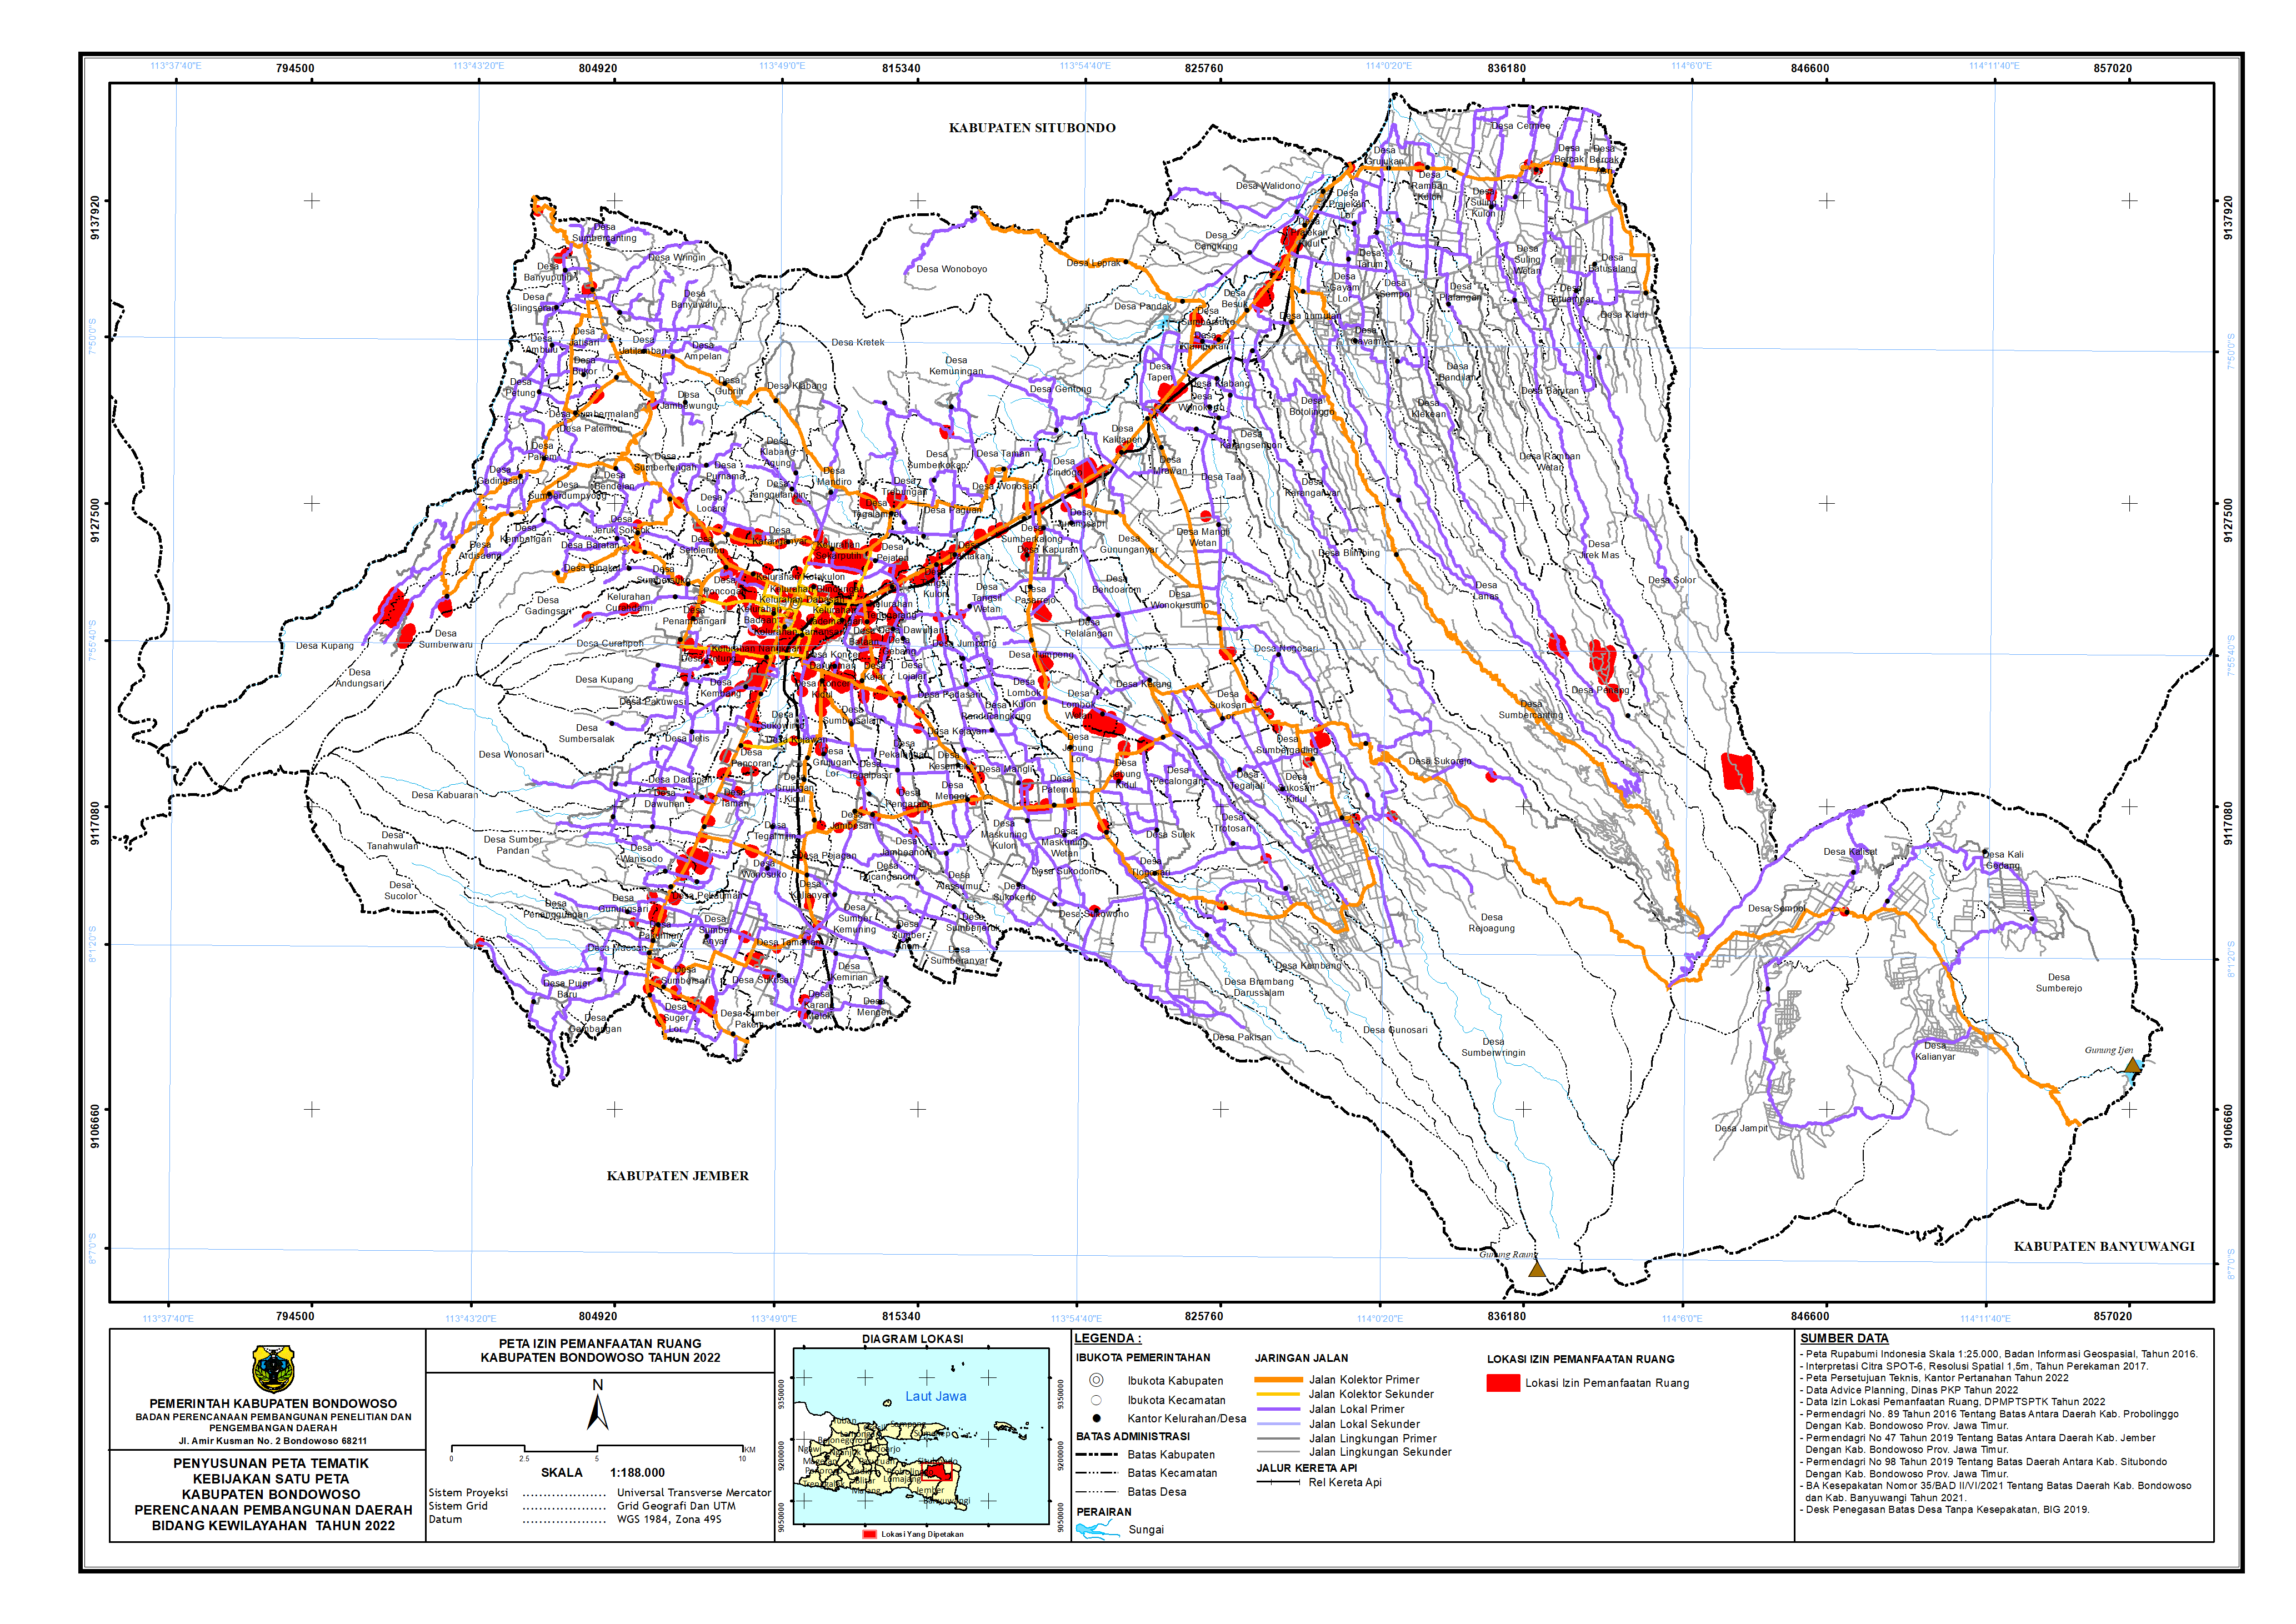 Peta Izin Pemanfaatan Ruang Kabupaten Bondowoso.png